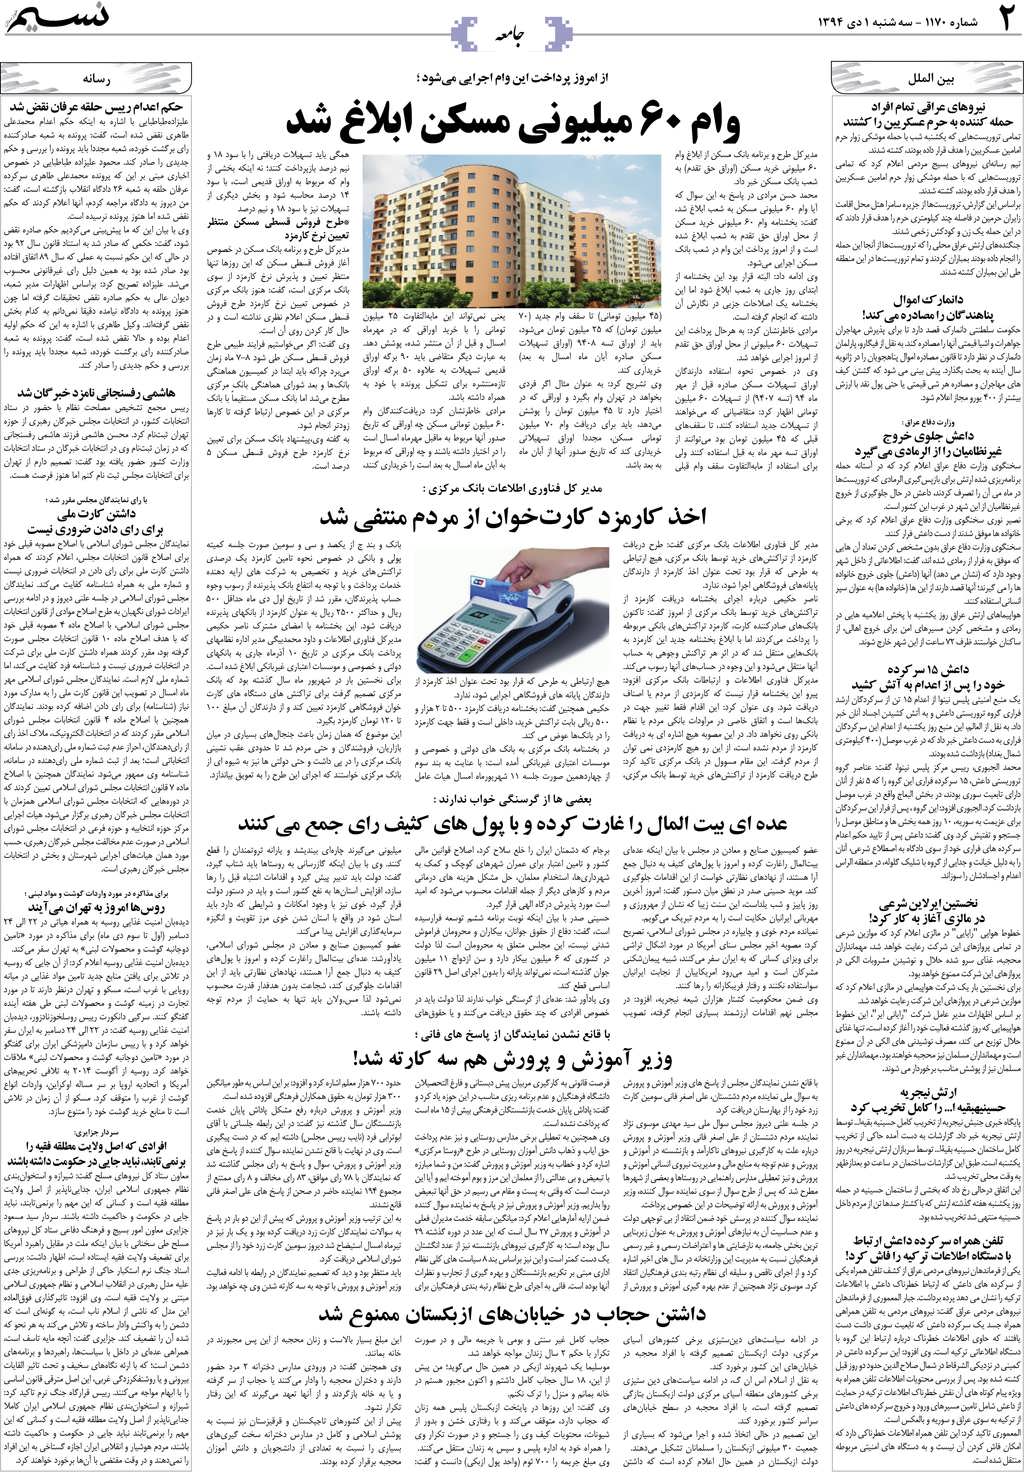 صفحه جامعه روزنامه نسیم شماره 1170